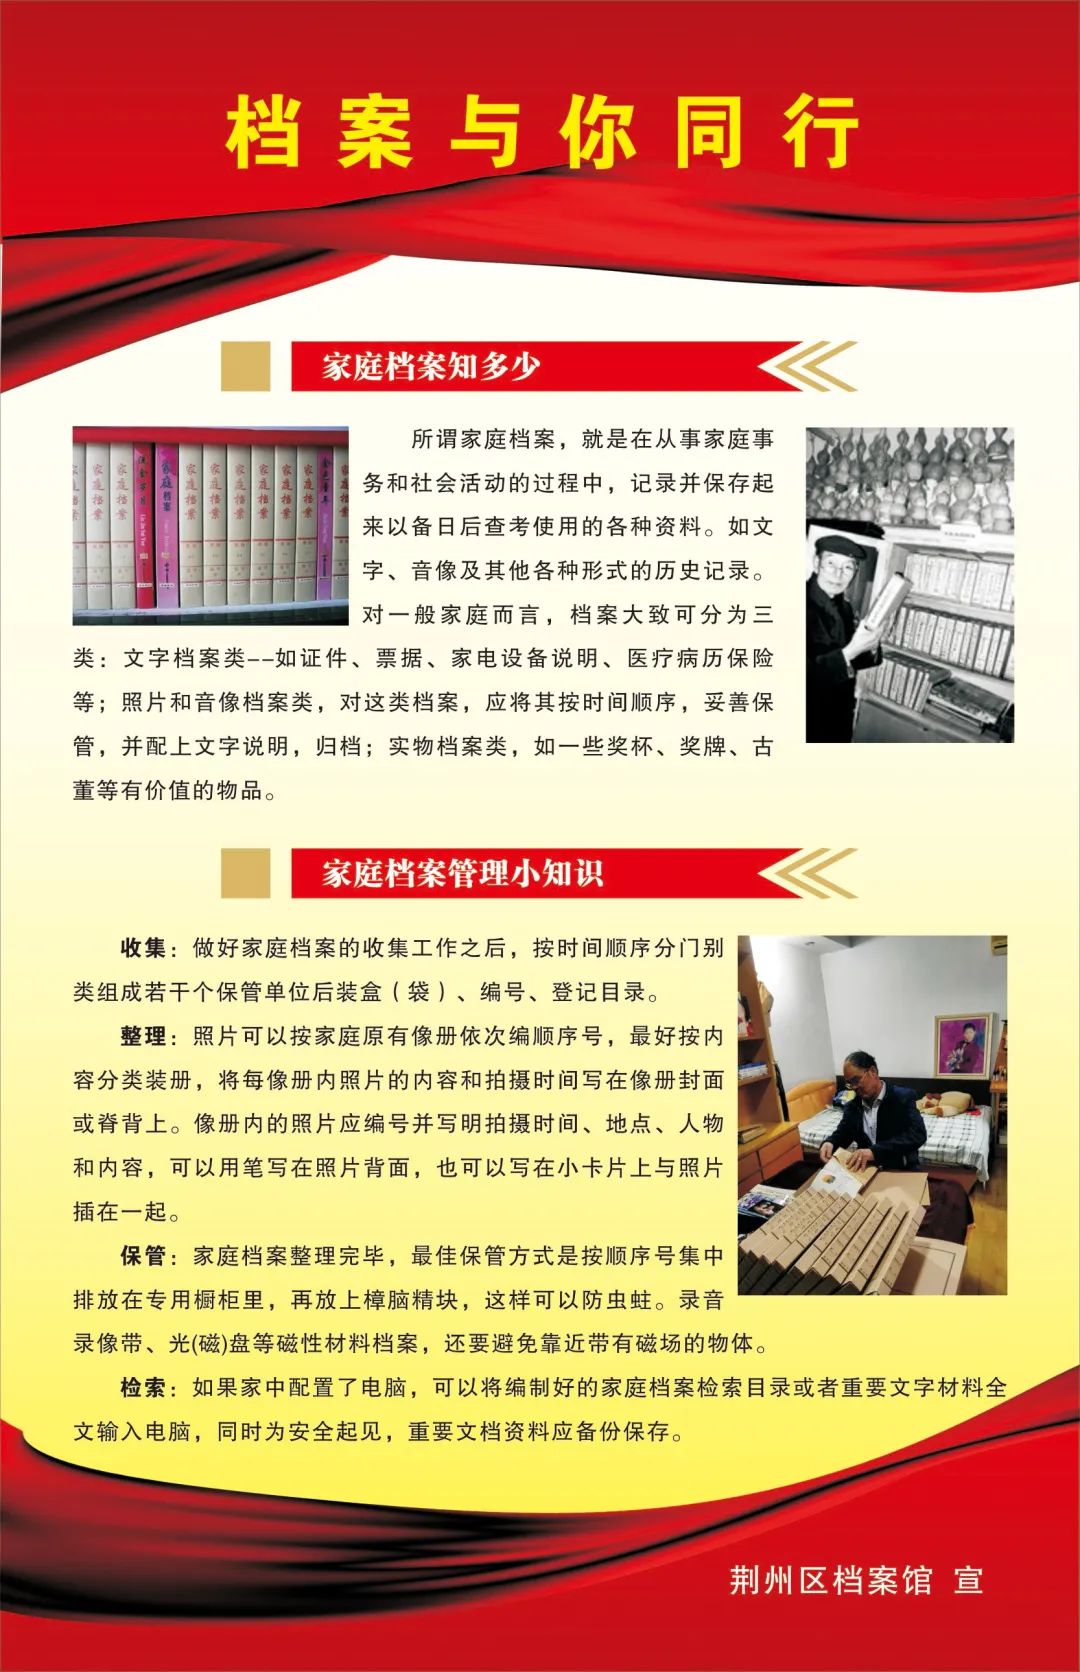 6·9国际档案日——荆州区档案馆开展系列宣传活动